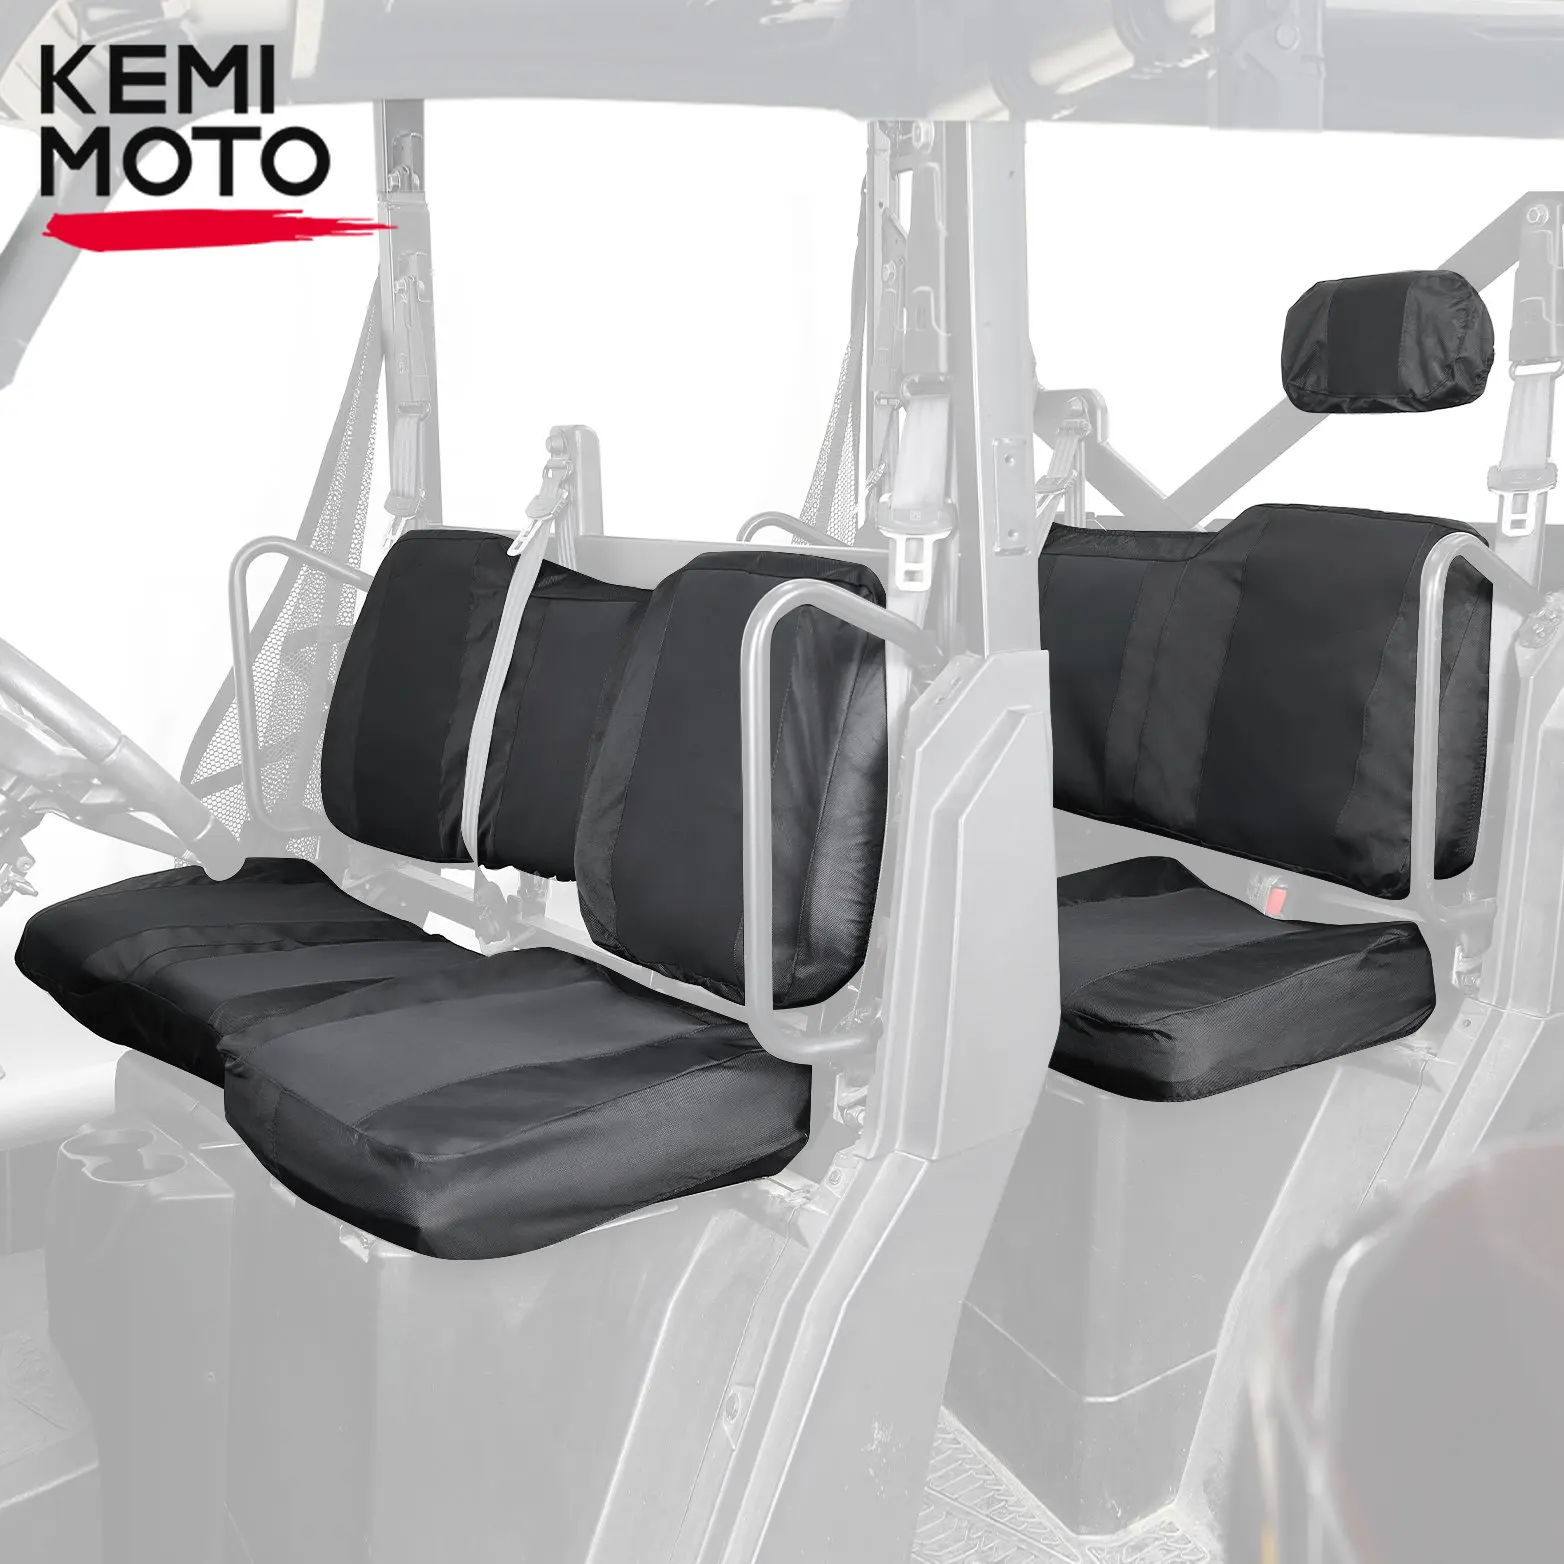 KEMIMOTO Crew Seat Set Covers with Headrest Compatible with Ranger Crew XP 1000 / Crew 1000 Premium / Crew XP 1000 2017-2023 зимний пакет bmw x3 ii f25 2014 2017 низ premium ооо депавто